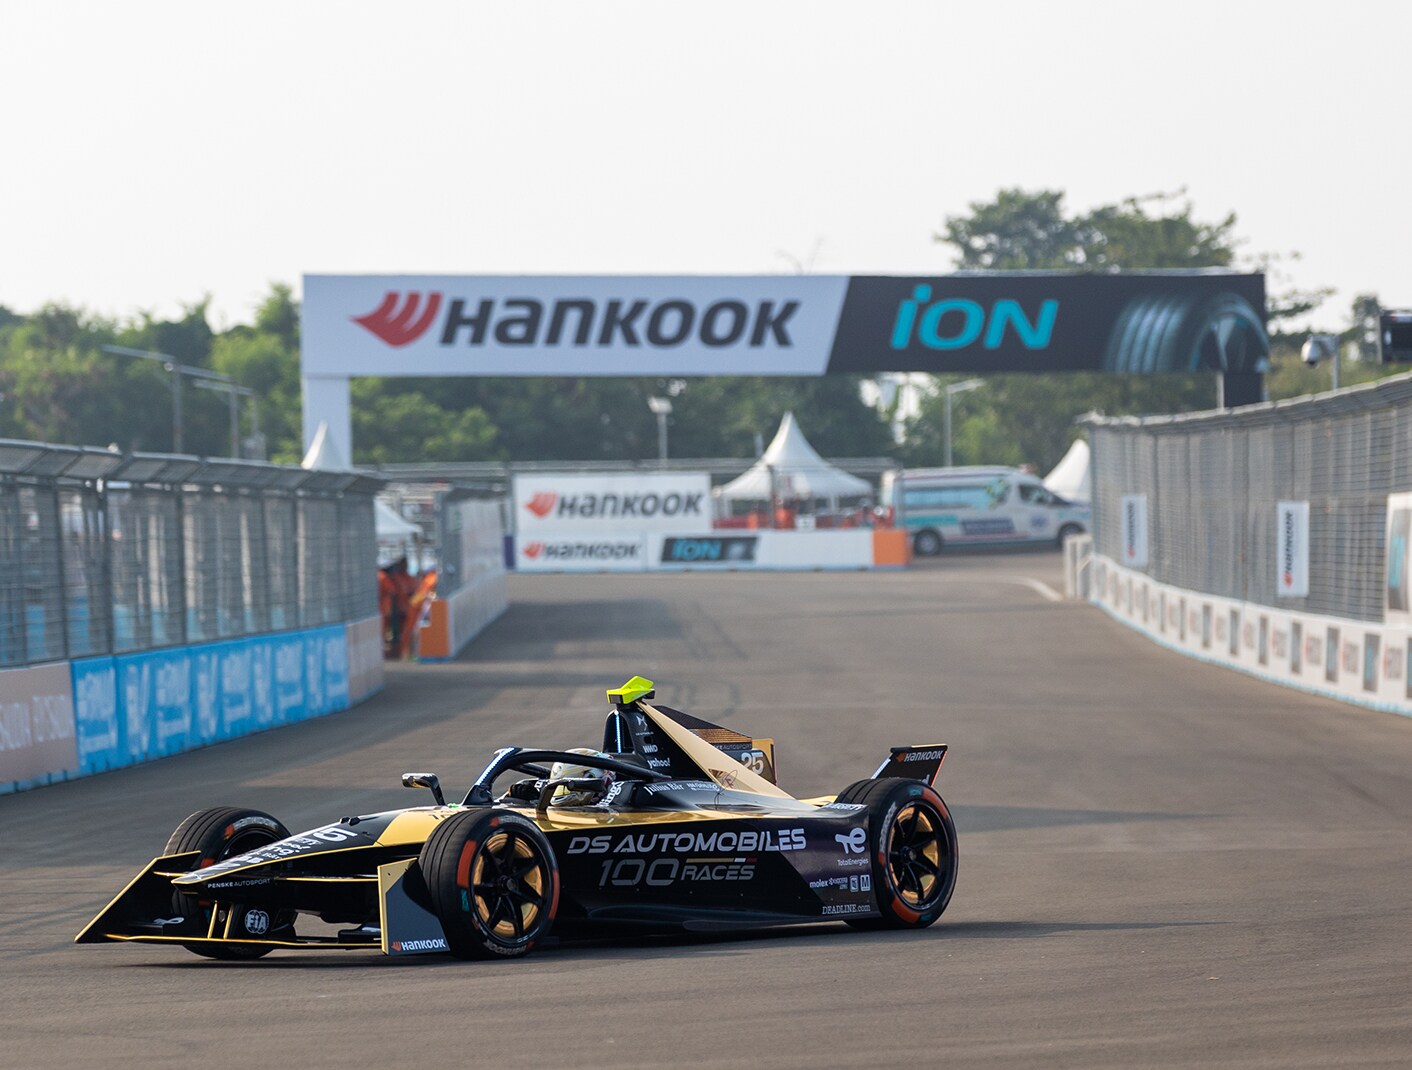 Germans Wehrlein và Günther giành chiến thắng trong Cuộc đua Hankook iON dưới cái nóng của Indonesia | Hankook Tire Việt Nam